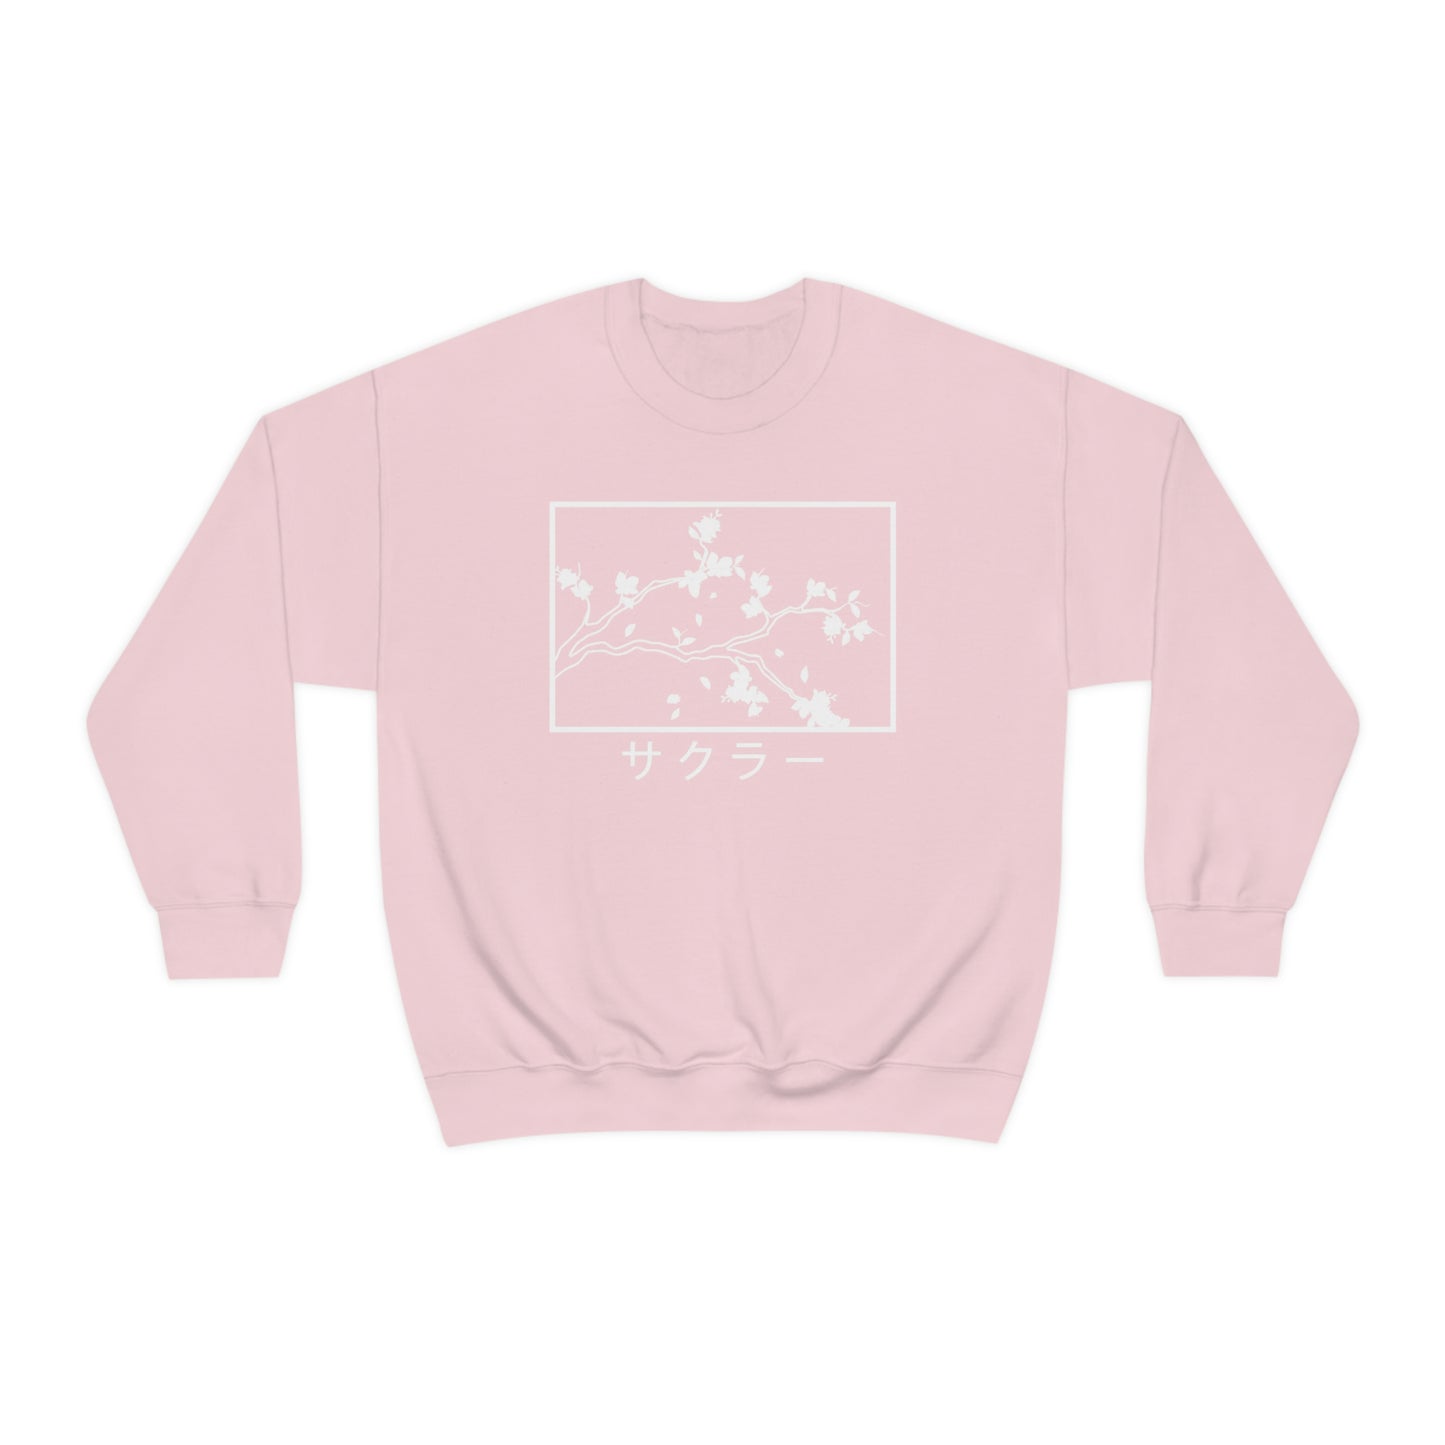 Sakura aesthetic Sweatshirt minimal minimalist Japan Sweater crewneck